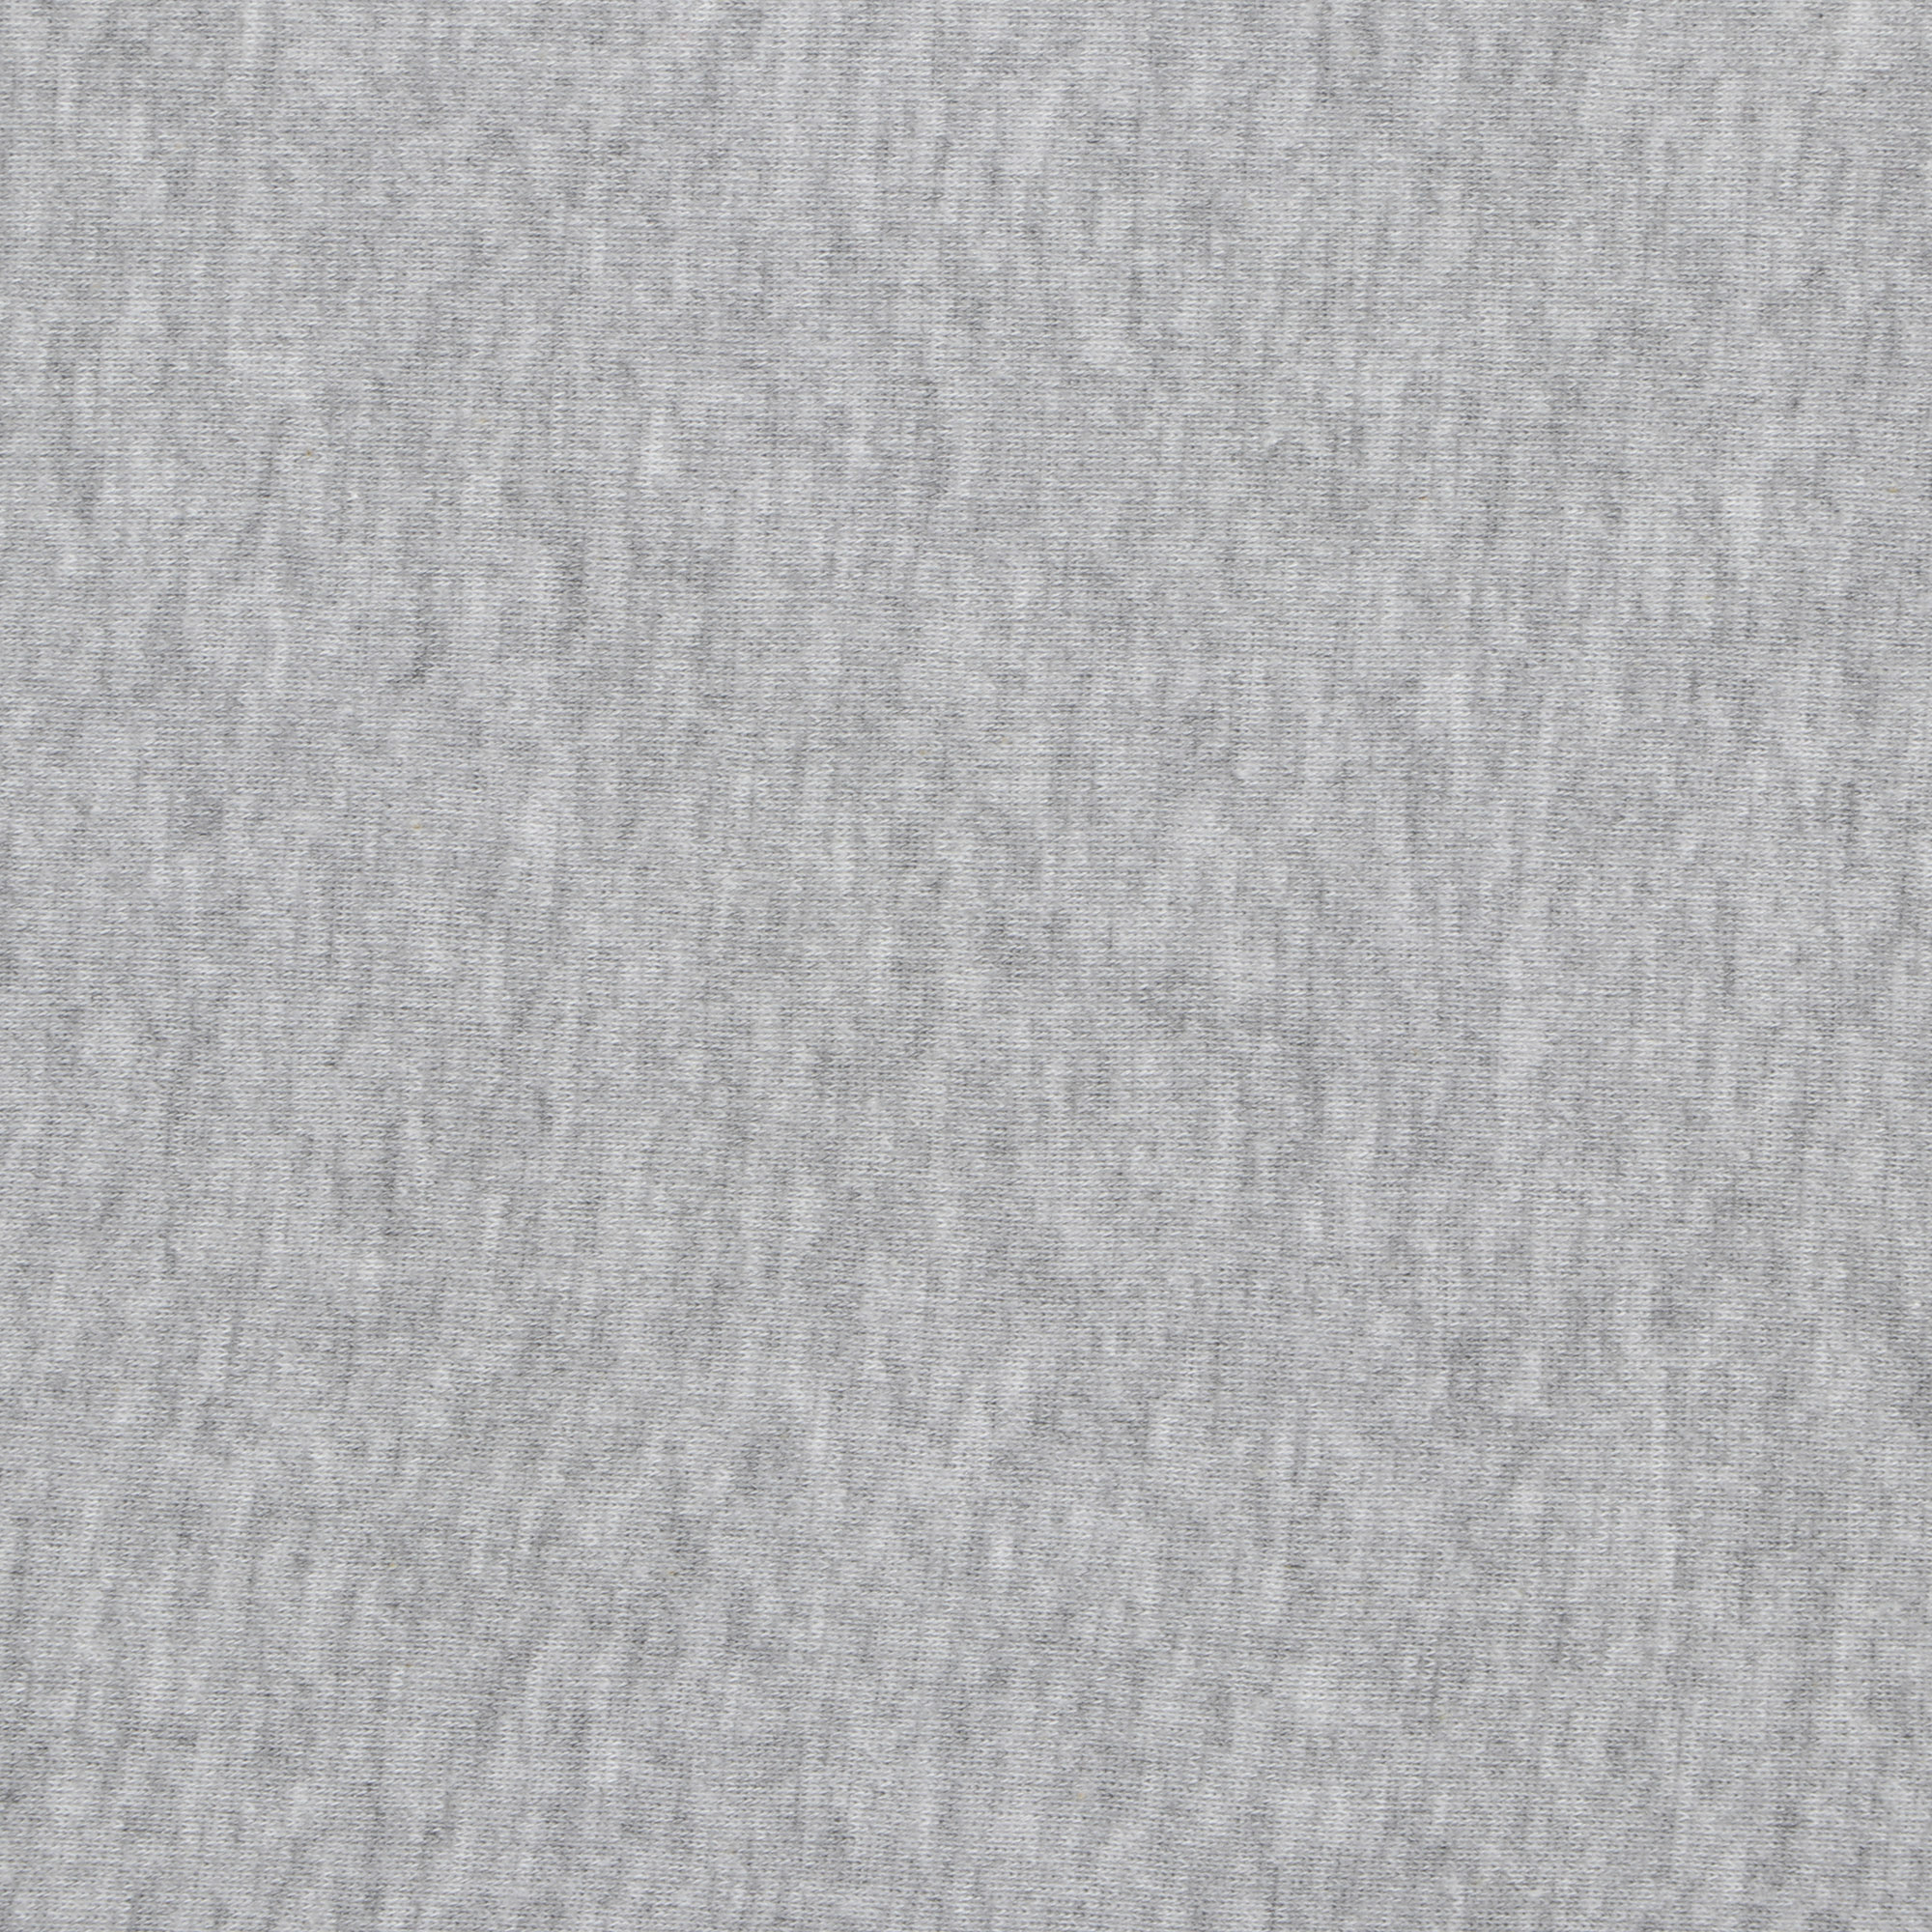 Футболка мужская Pantelemone 48 серая, цвет серый, размер 48 - фото 3